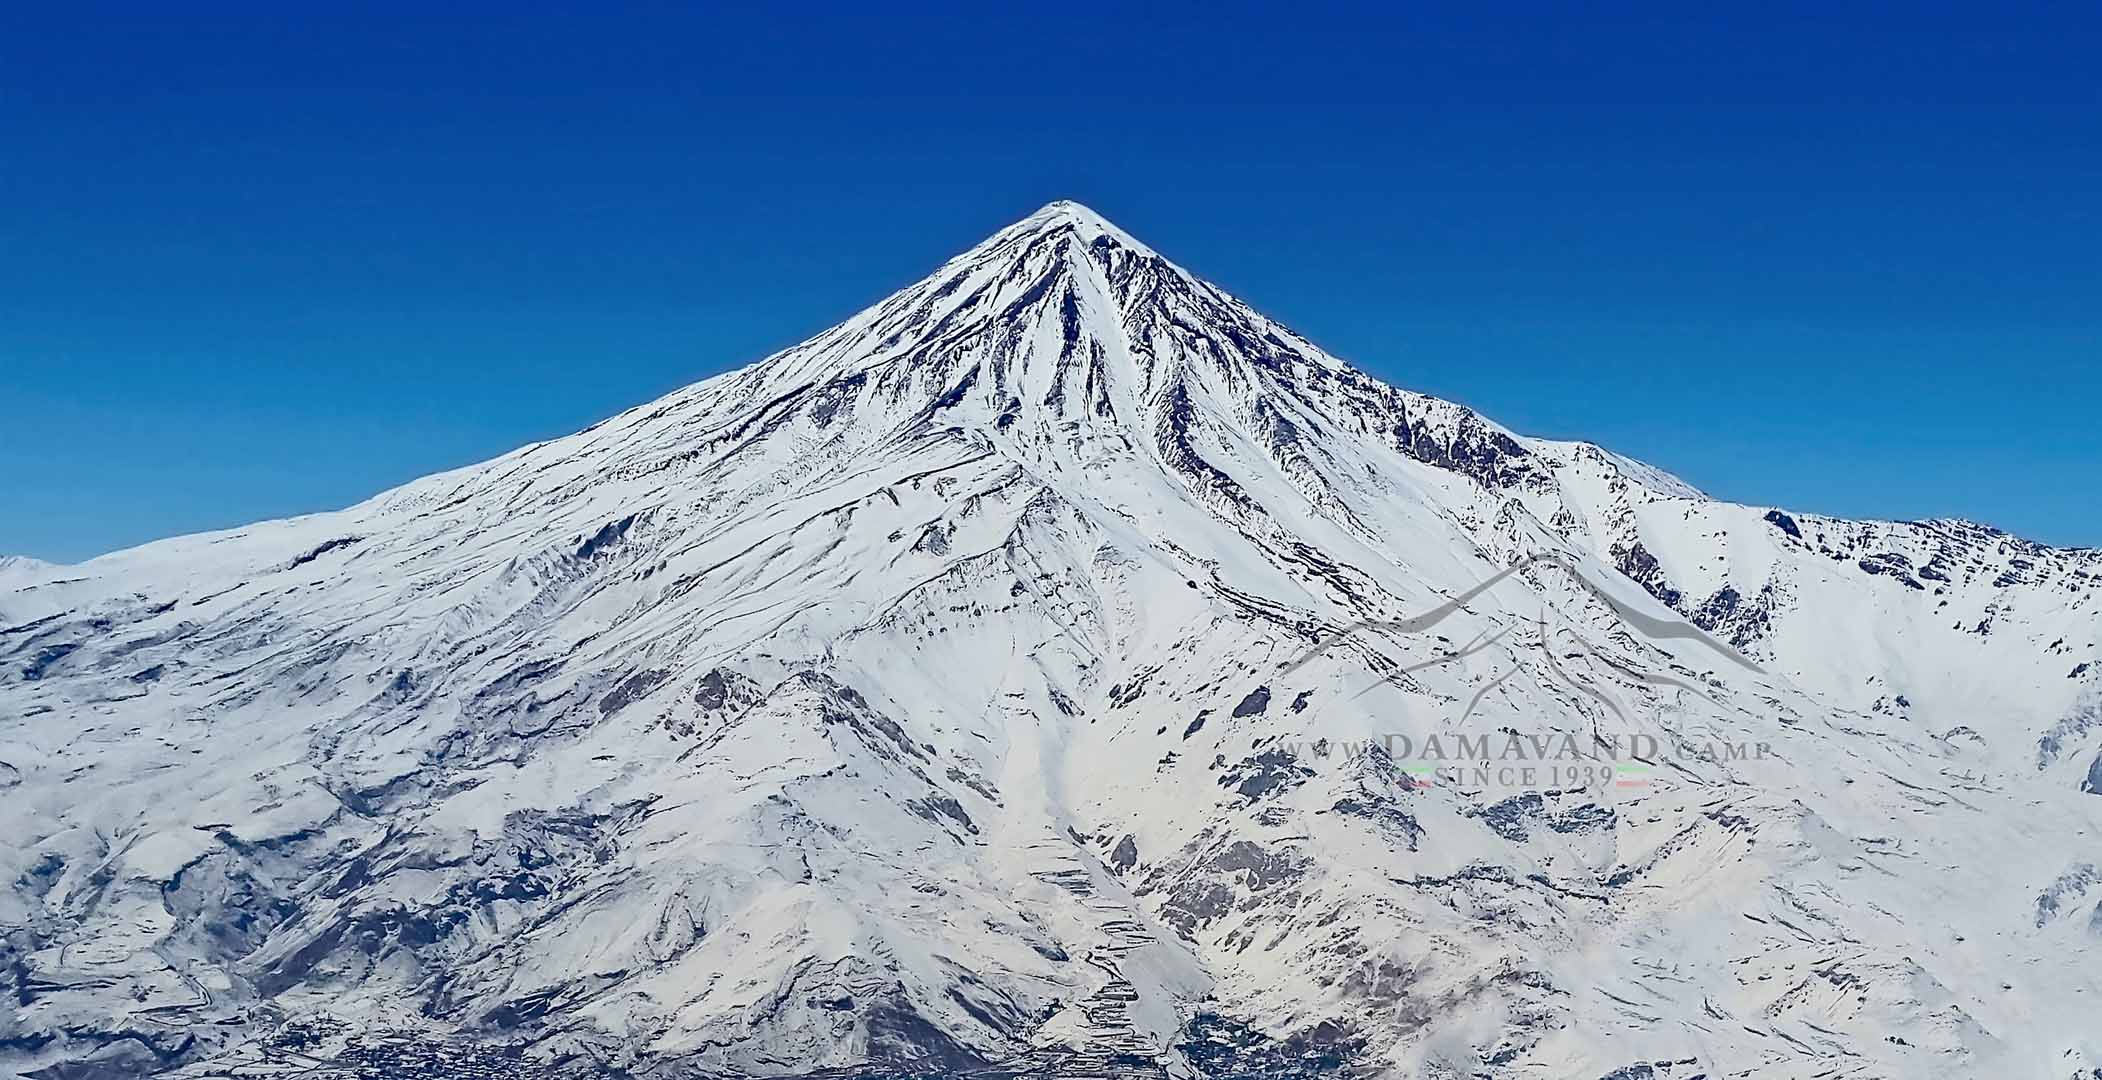 Winter View of Mount Damavand